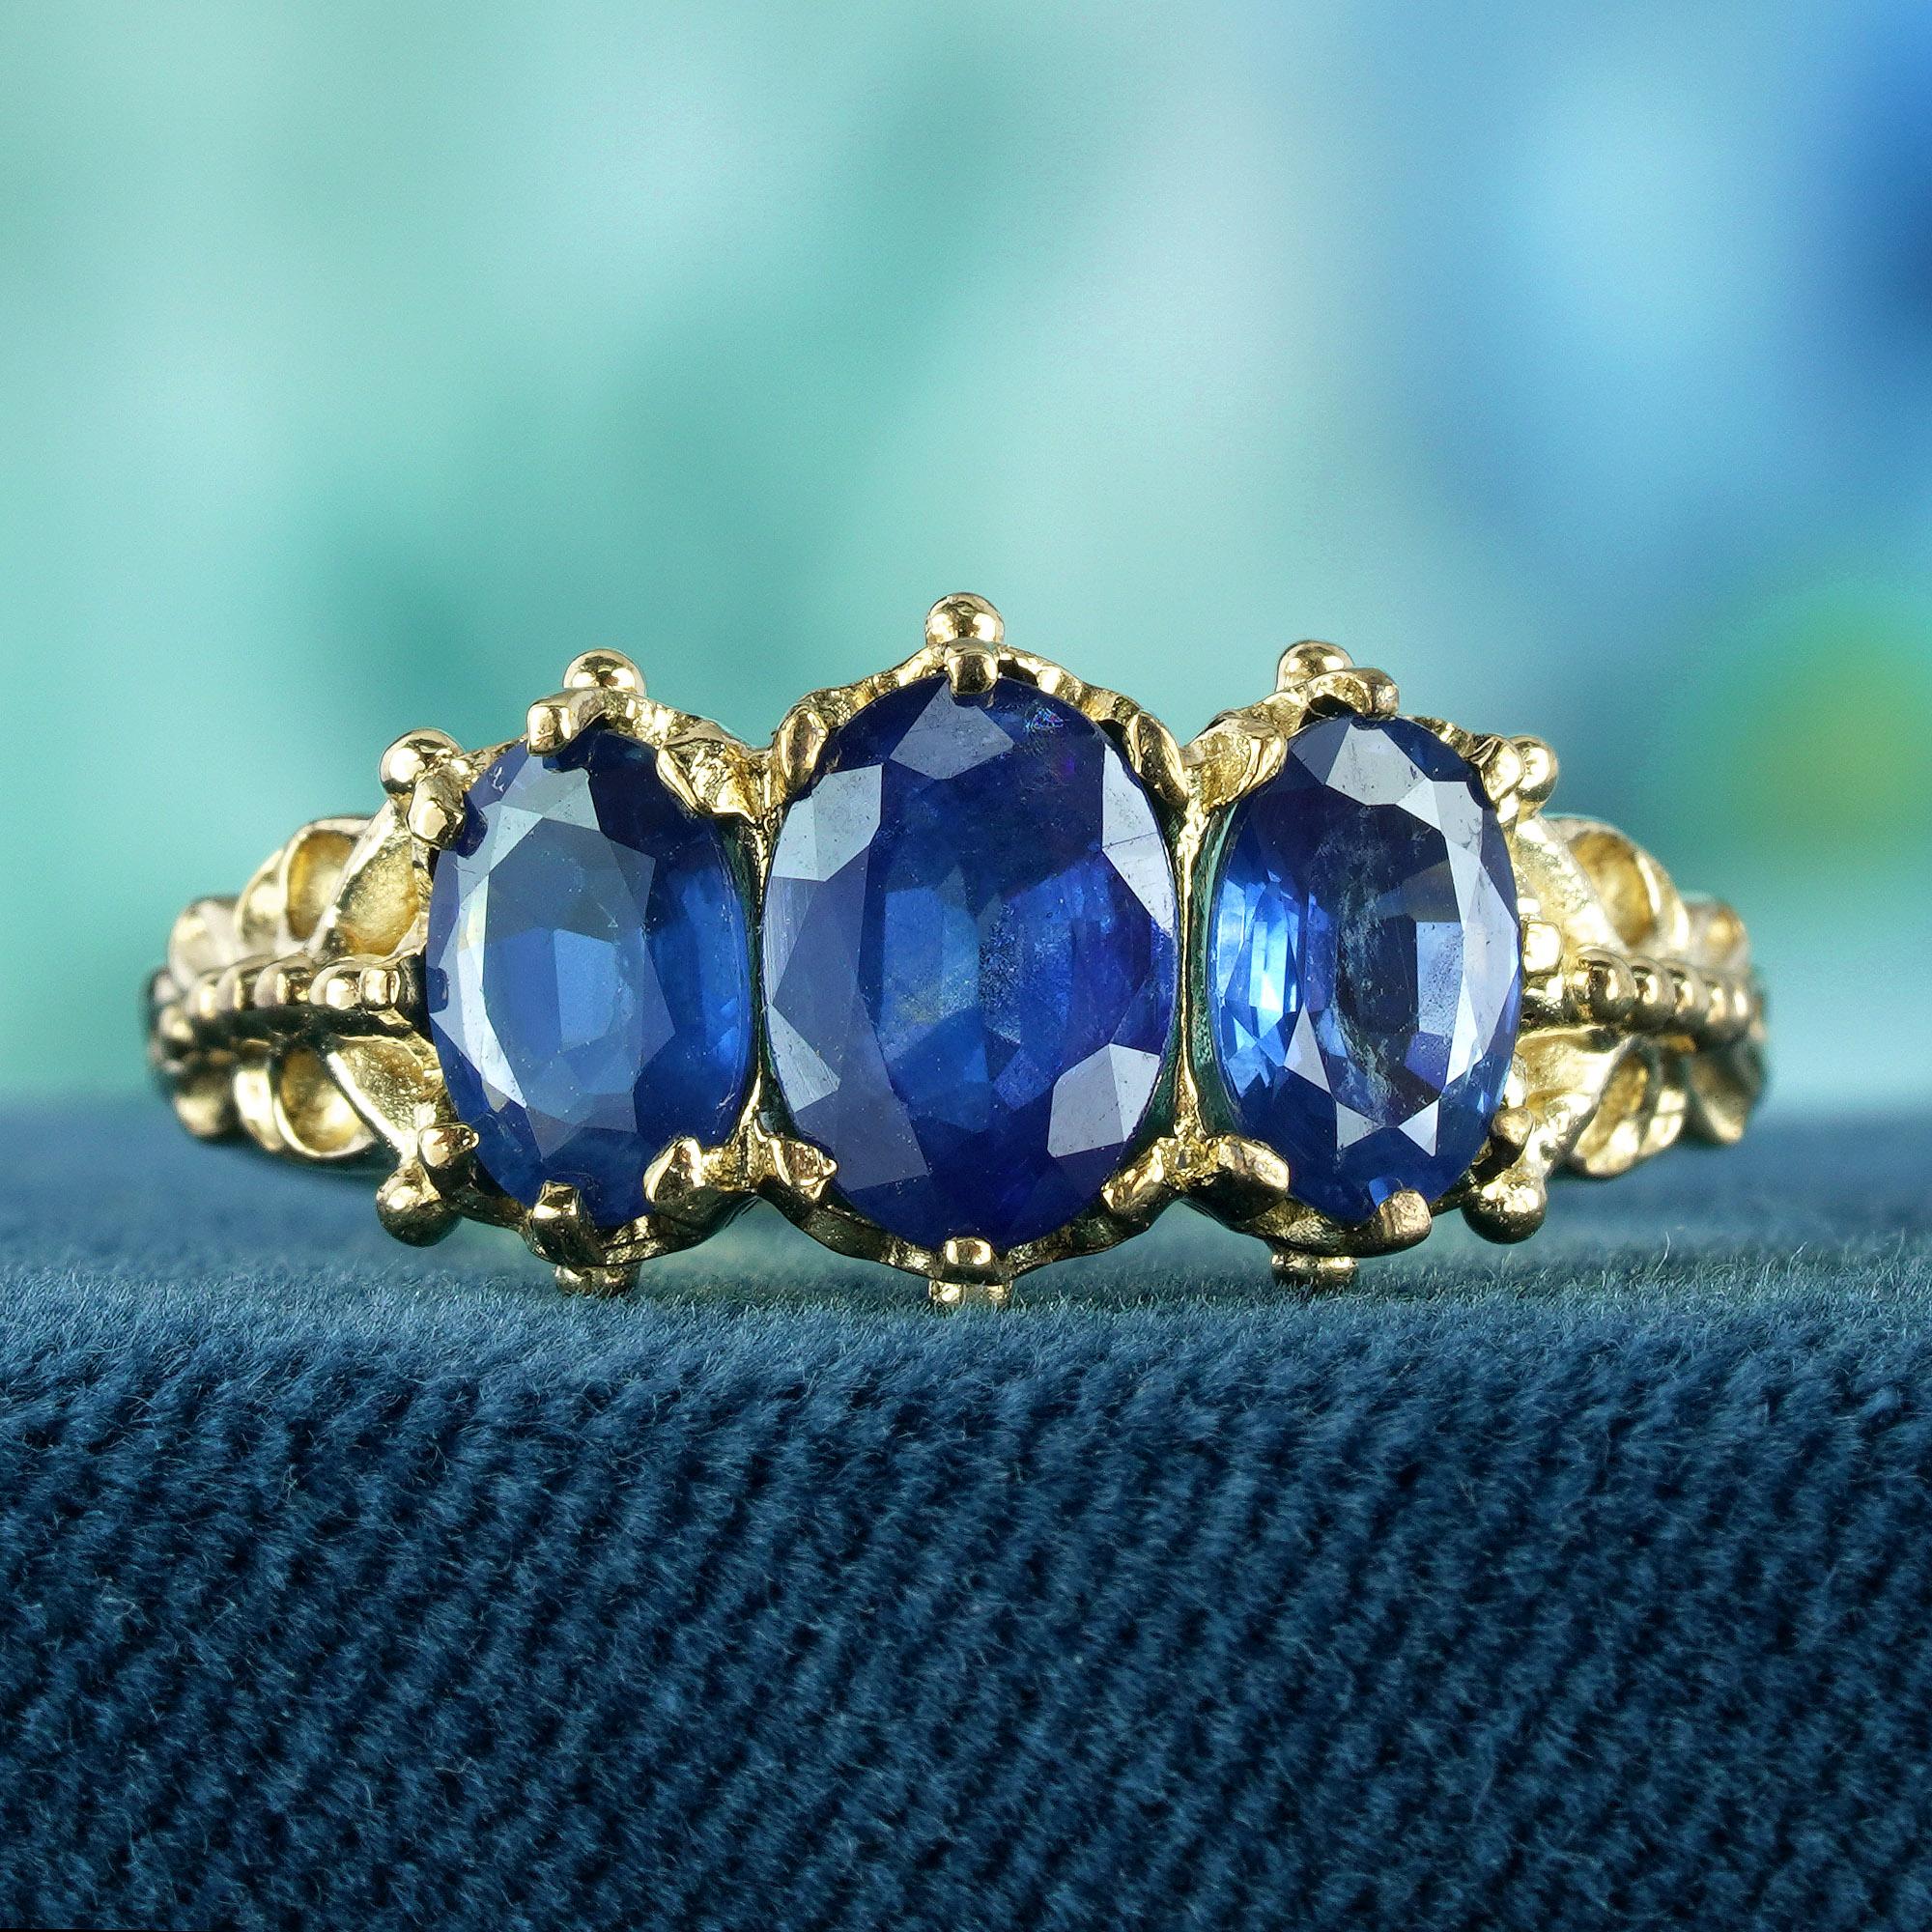 Dieser Ring zeigt drei natürliche blaue Saphire, jeder mit einem fesselnden tiefblauen Farbton und einem facettierten Ovalschliff, der dafür sorgt, dass sie das Licht einfangen und die Blicke auf sich ziehen. Das filigrane Band aus Gelbgold strahlt